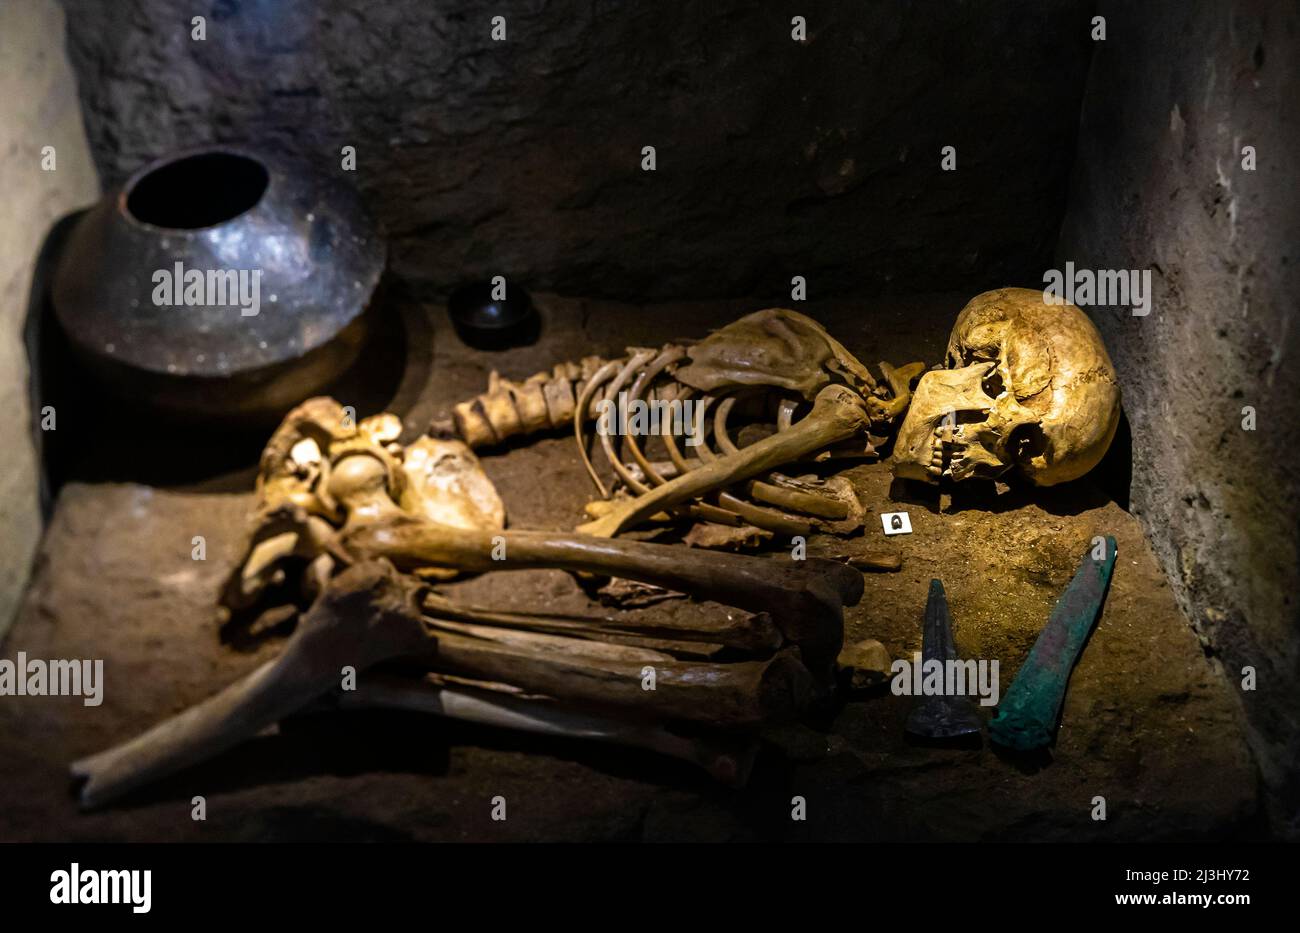 Cist of Herrerias - sepoltura dell'uomo (armi, ornamento d'argento, nave, ossa, cranio) Età del Bronzo precoce. Miniera di Iberia, Almeria, Spagna Foto Stock